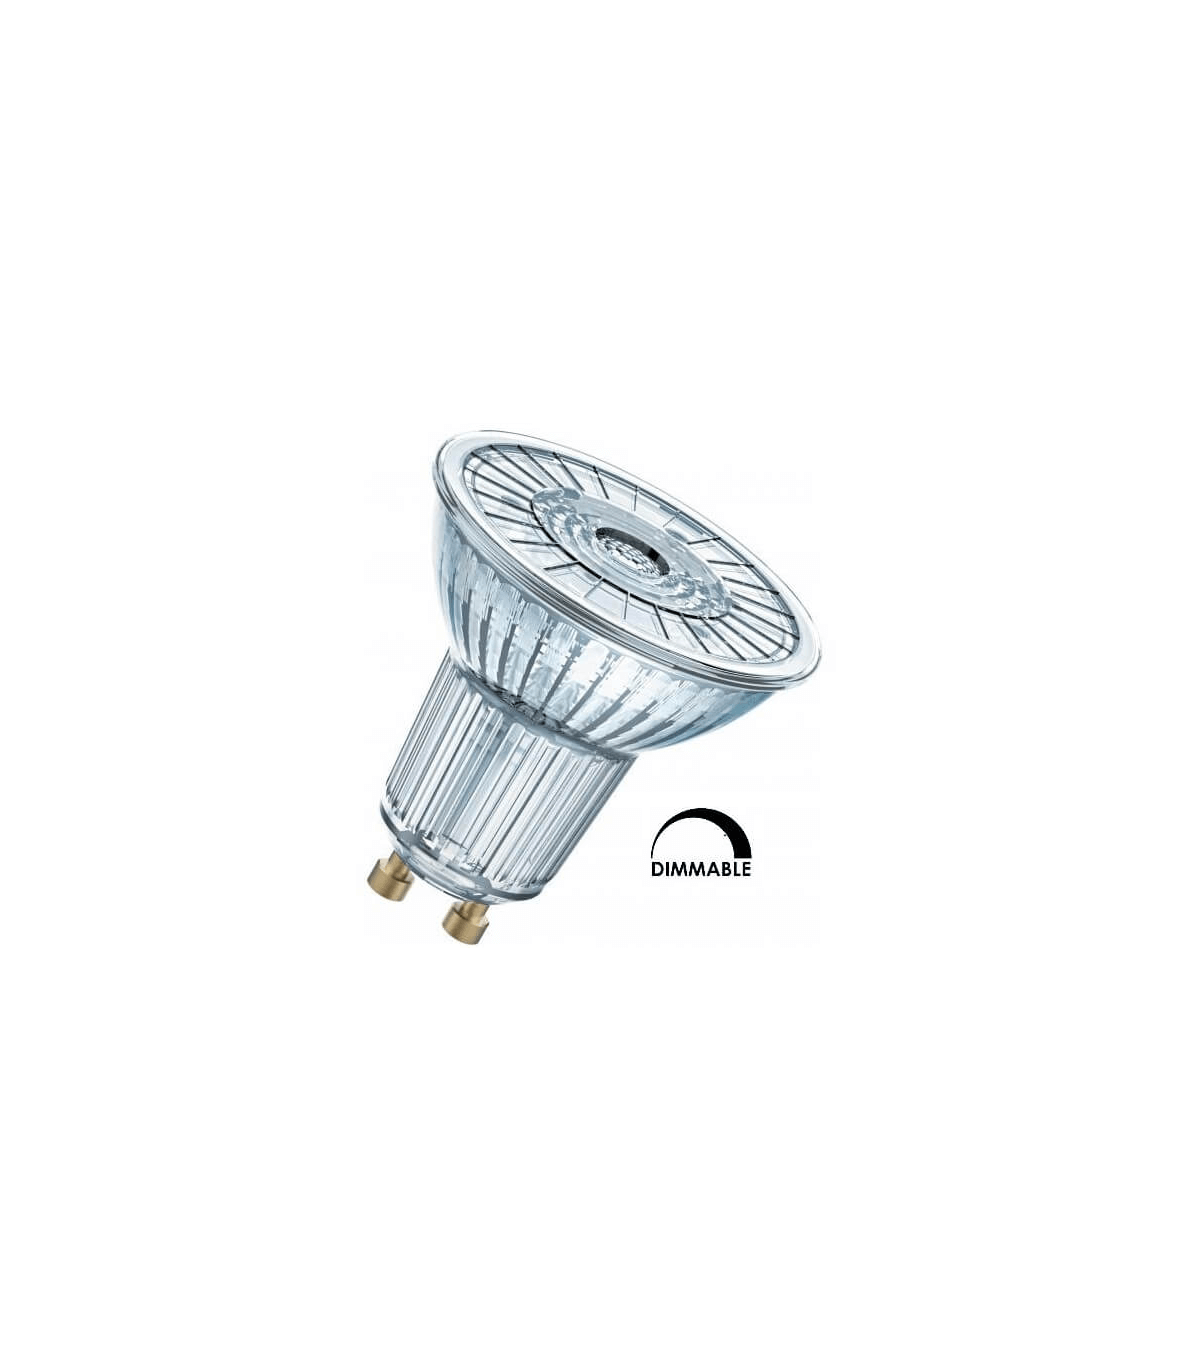 Ampoule LED GU10, PAR16, 4 W, 230 lm, 2700 K